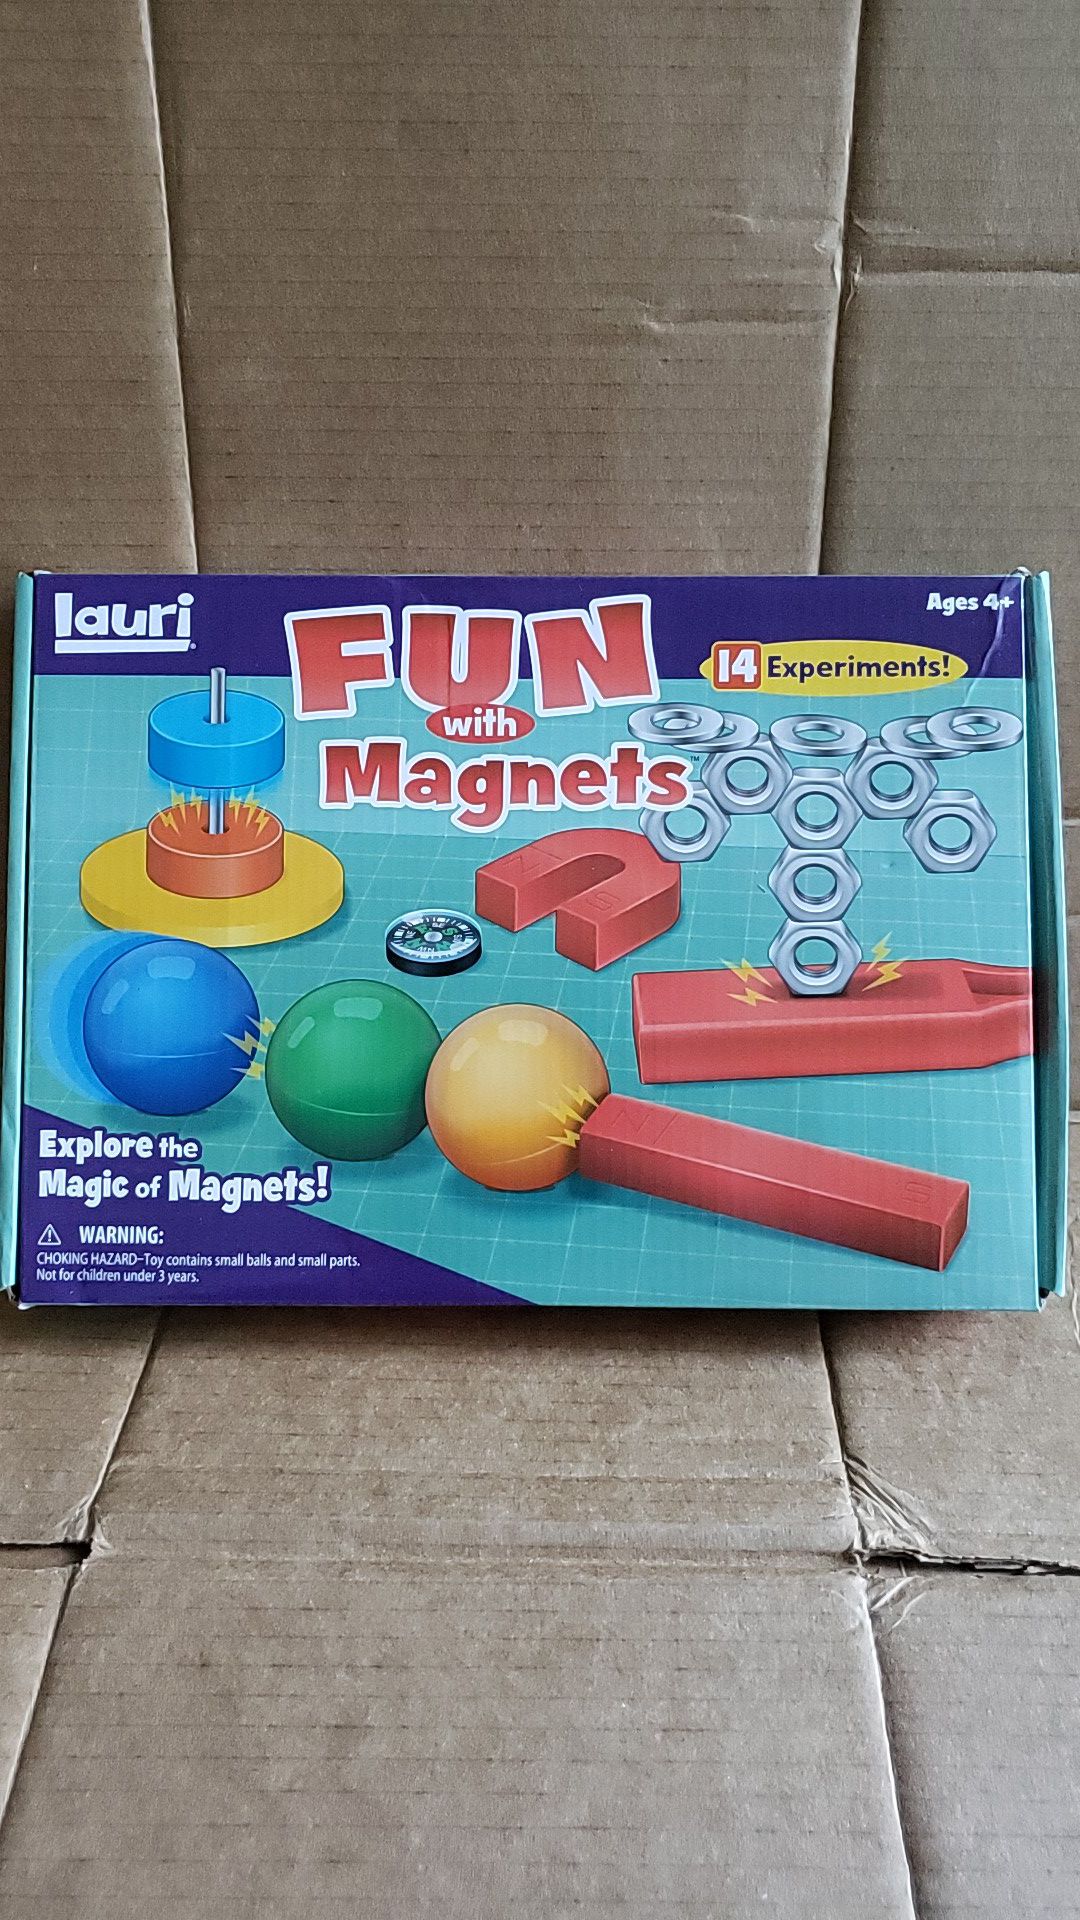 Magnet games